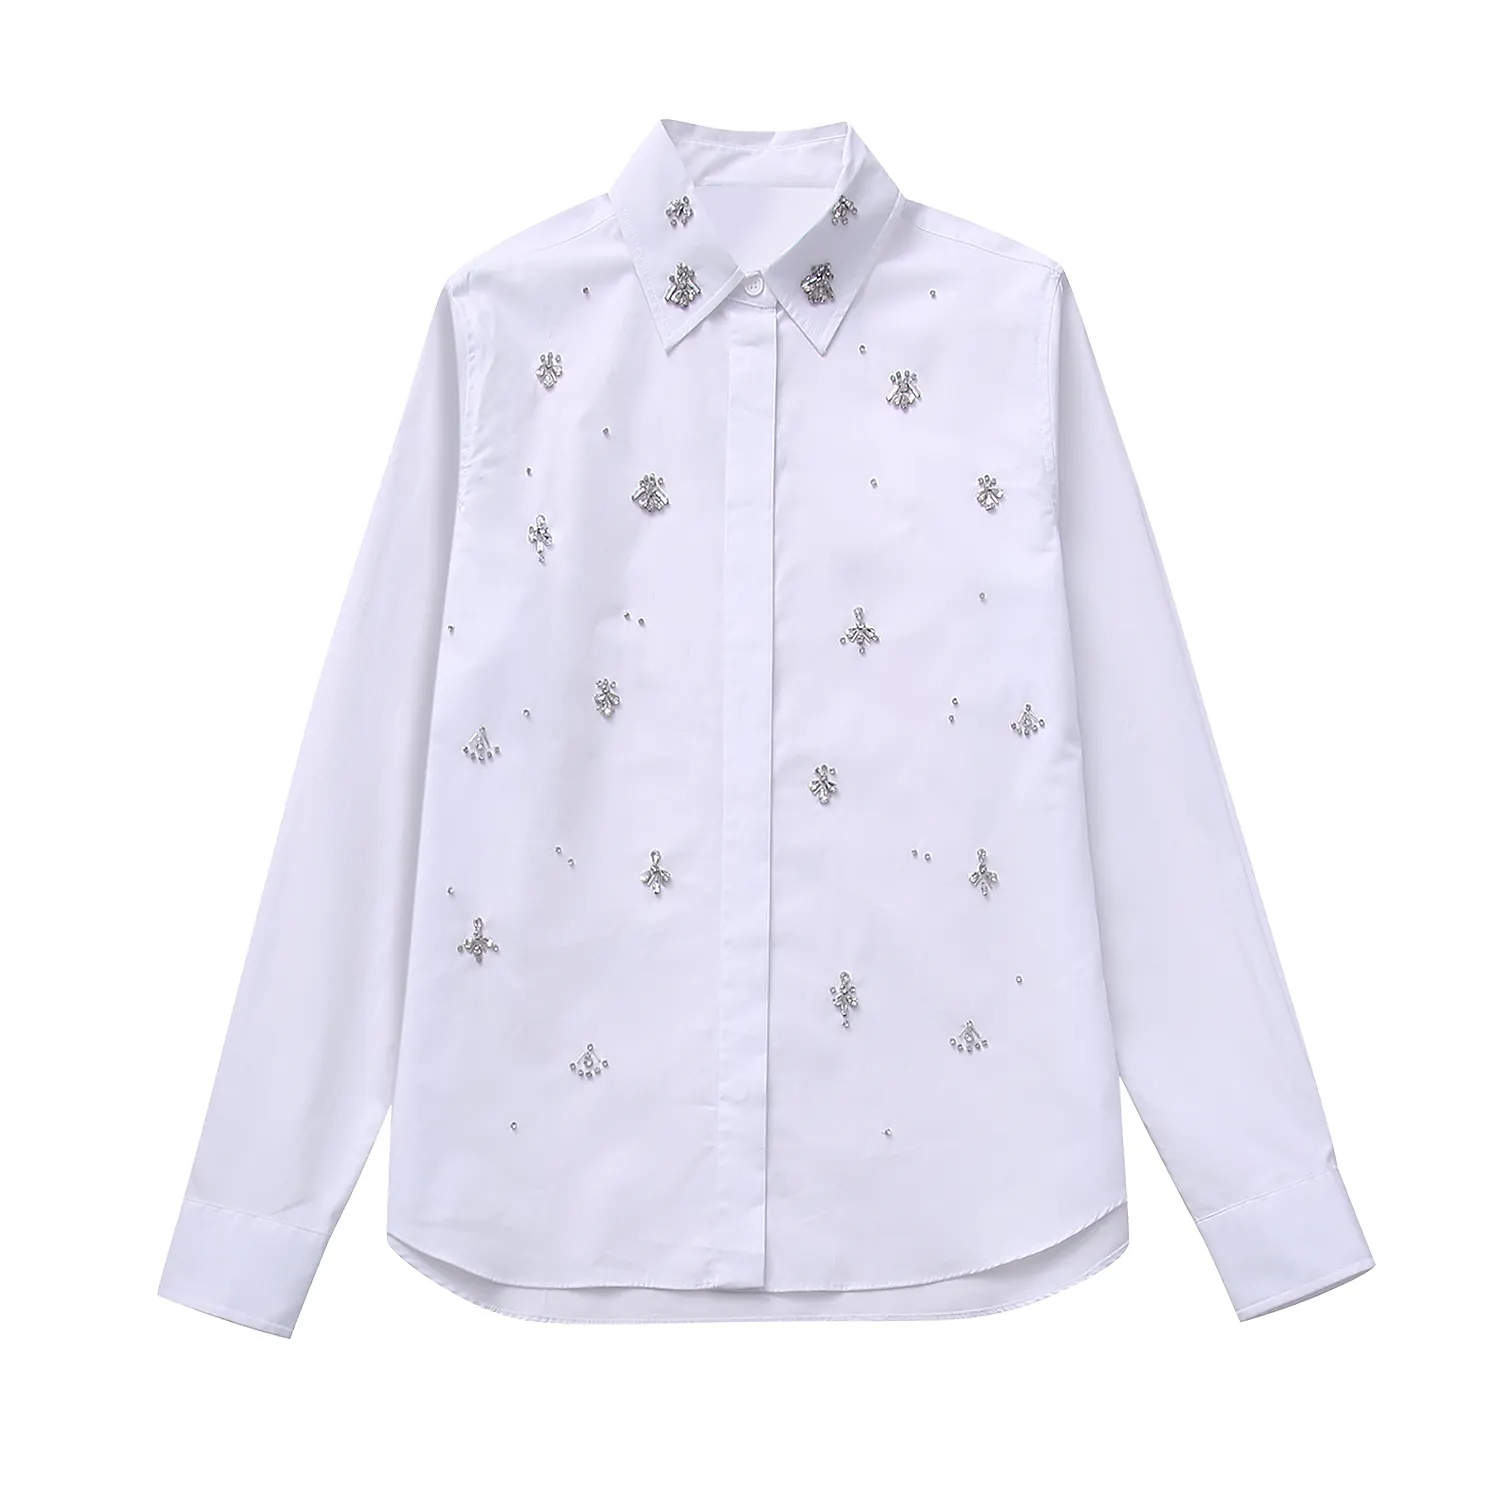 비즈 화이트 컬러 긴 소매 다운 칼라 버튼 여성용 캐주얼 패션 셔츠